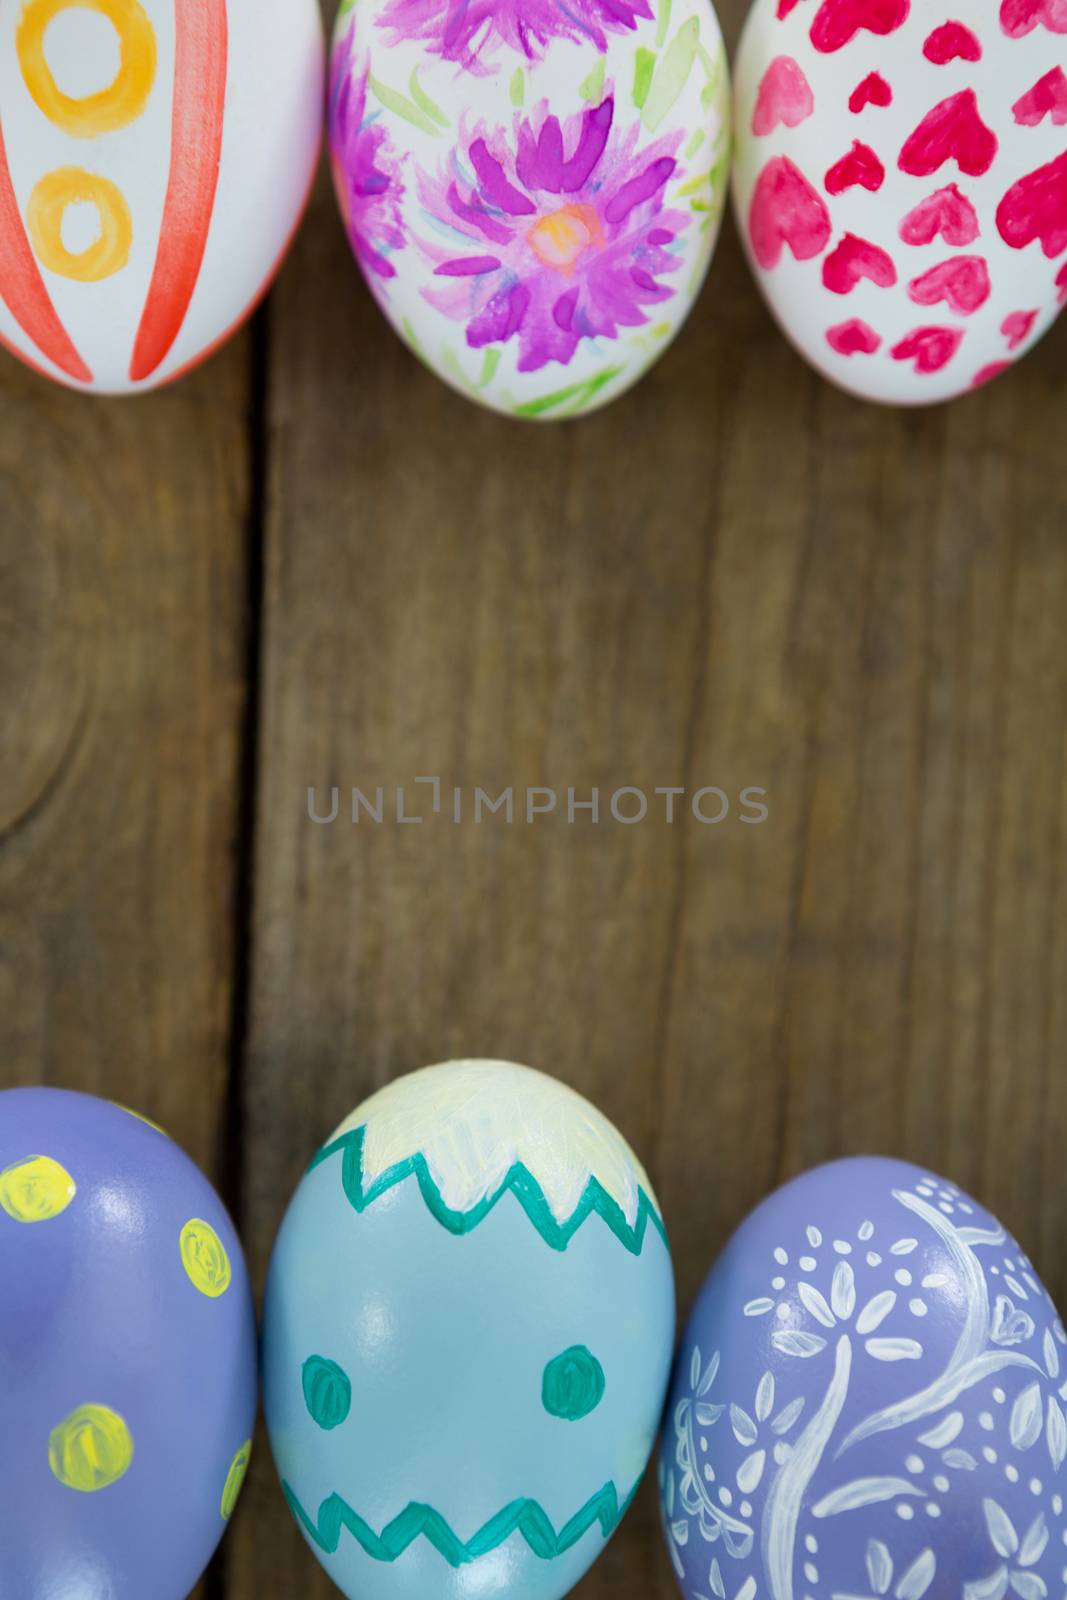 Painted Easter eggs by Wavebreakmedia